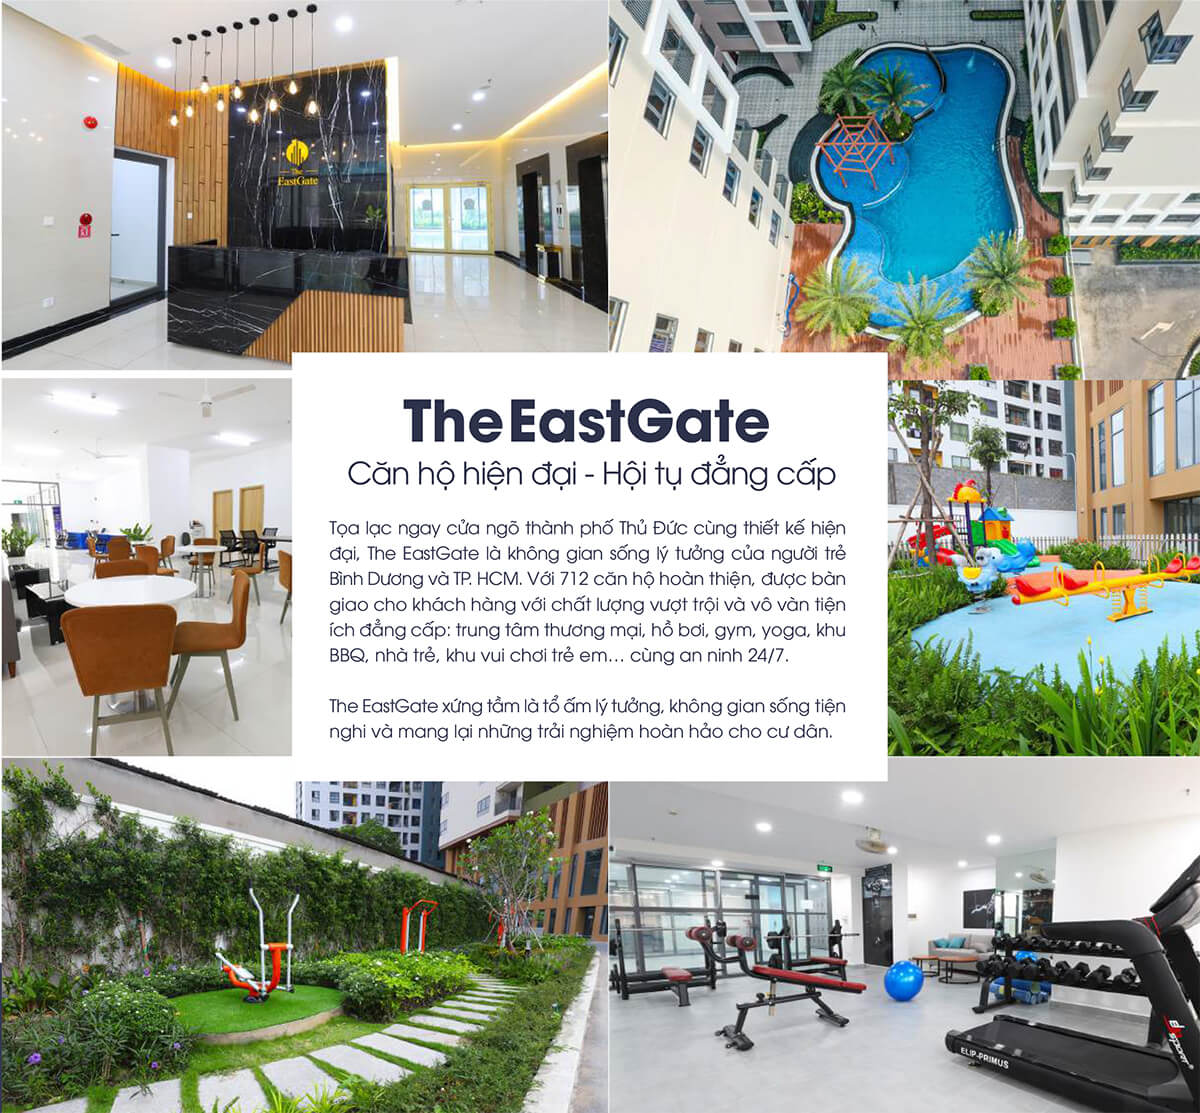 Tiện ích dự án căn hộ The Eastgate Dĩ An Bình Dương